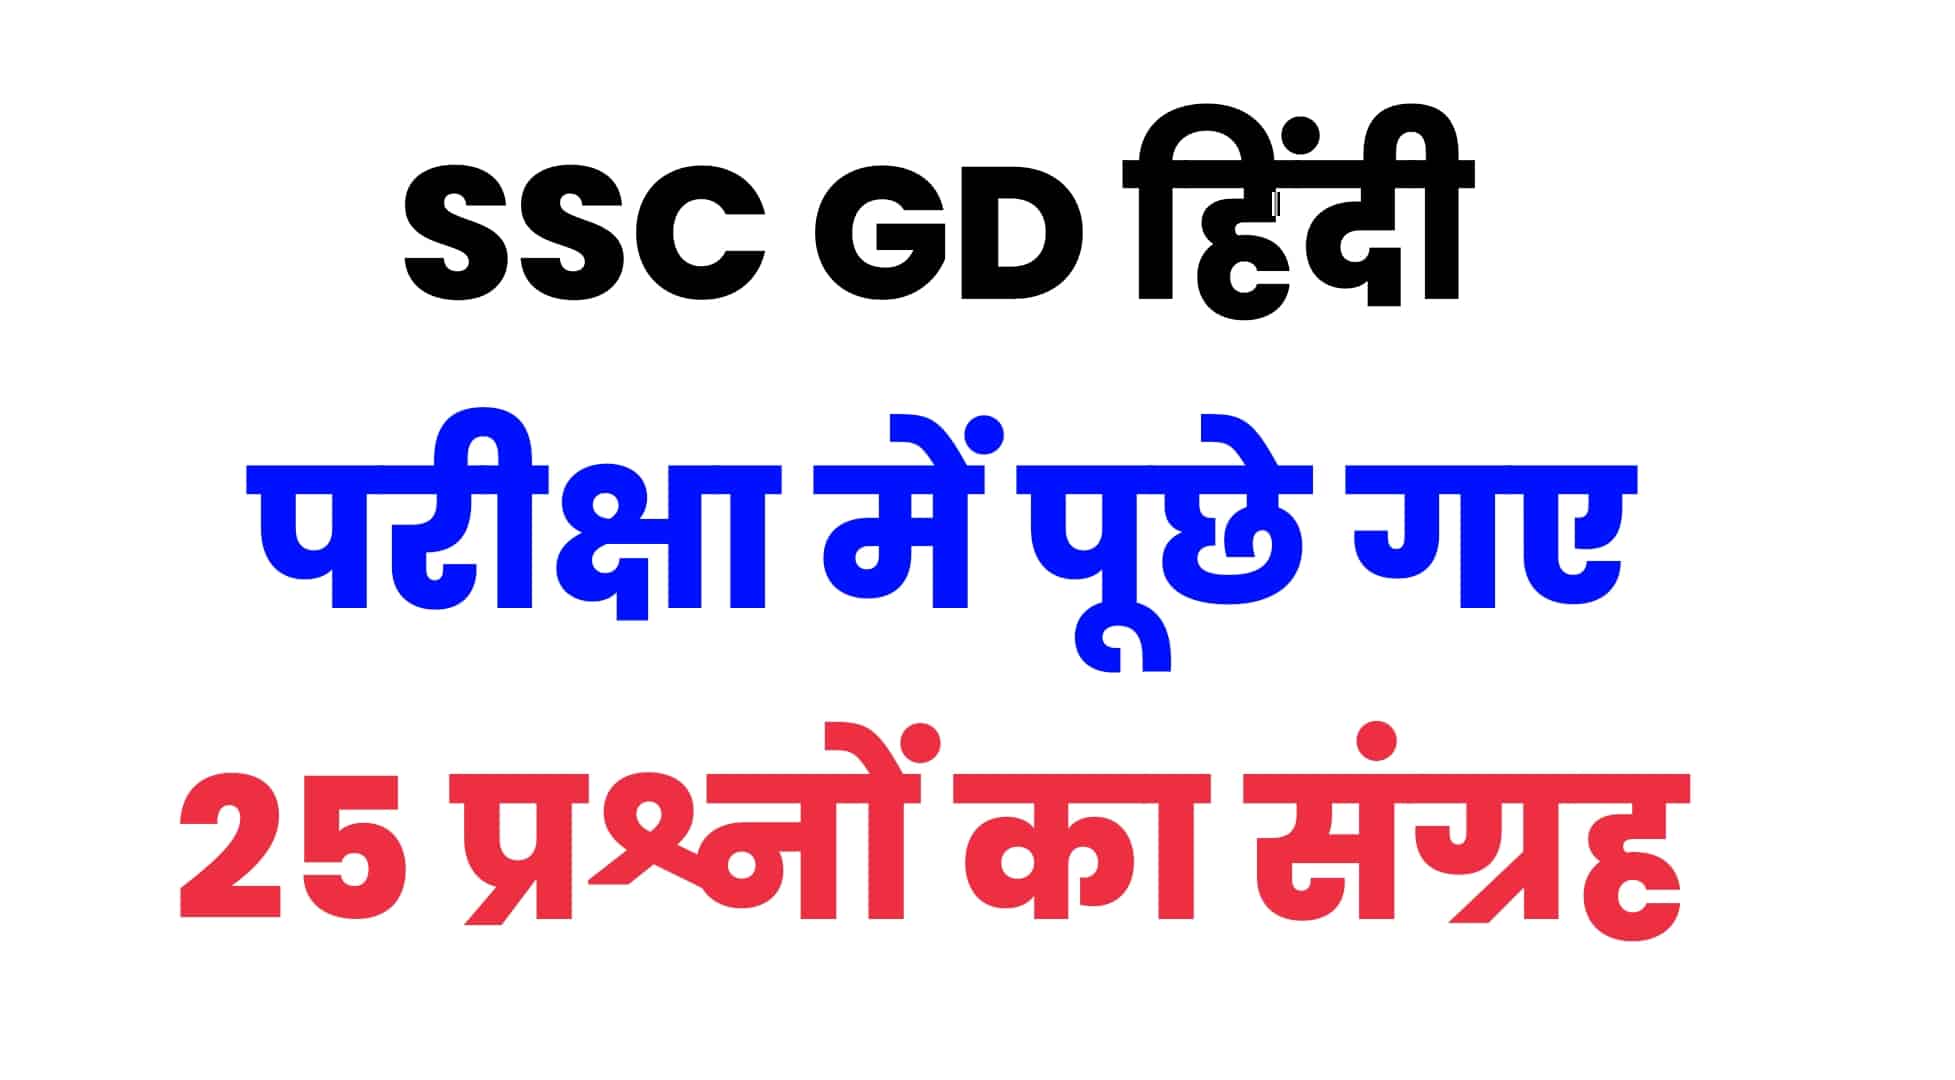 SSC GD हिंदी भाषा प्रैक्टिस सेट : परीक्षा में जाने से पहले इन 25 महत्वपूर्ण प्रश्नों को जरूर एक नजर देखें